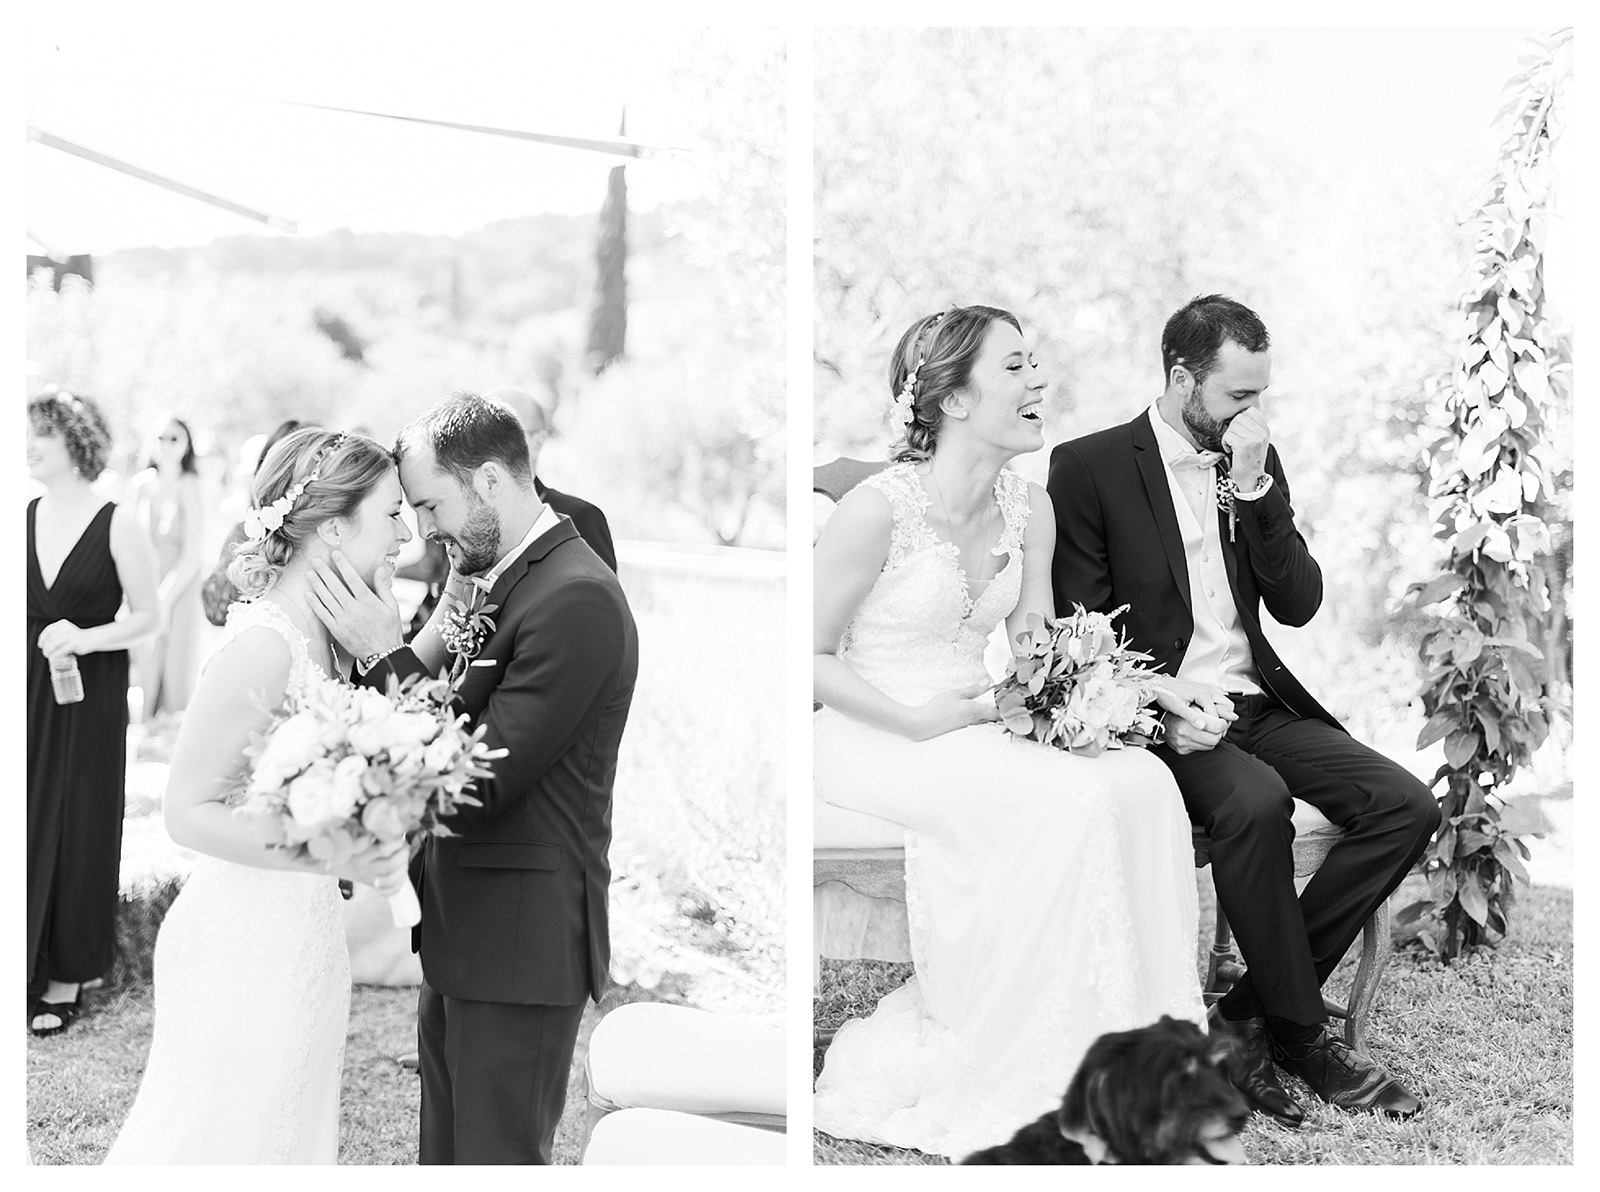 Photographe de mariage dans le var pour cérémonie civile